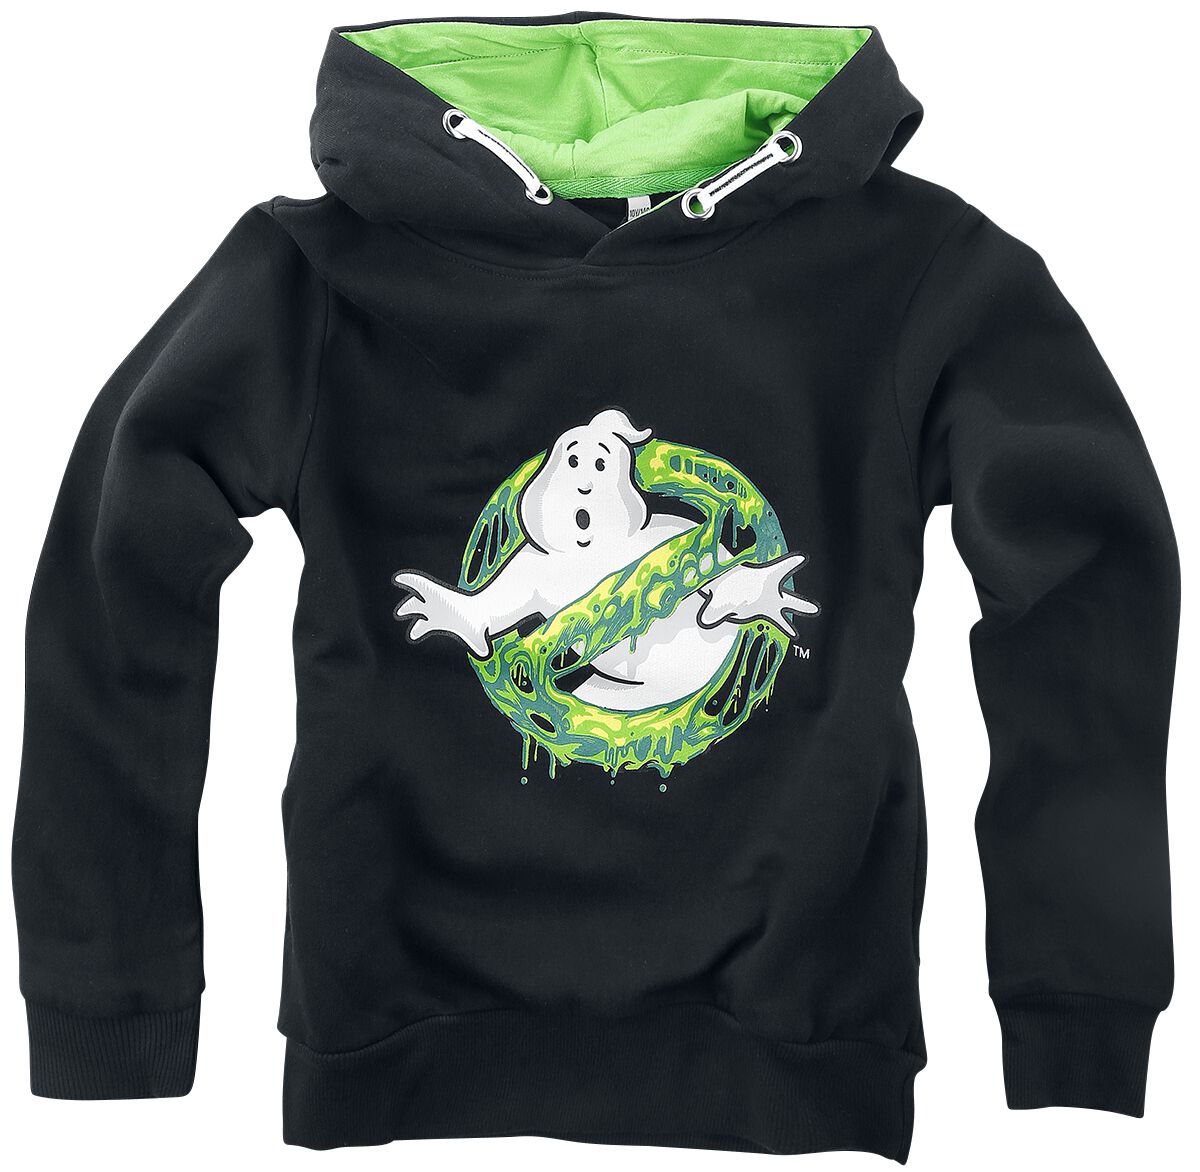 Ghostbusters Kapuzenpullover - Kids - I Ain`t Afraid Of No Ghost - 116 bis 140 - Größe 116 - schwarz  - EMP exklusives Merchandise!